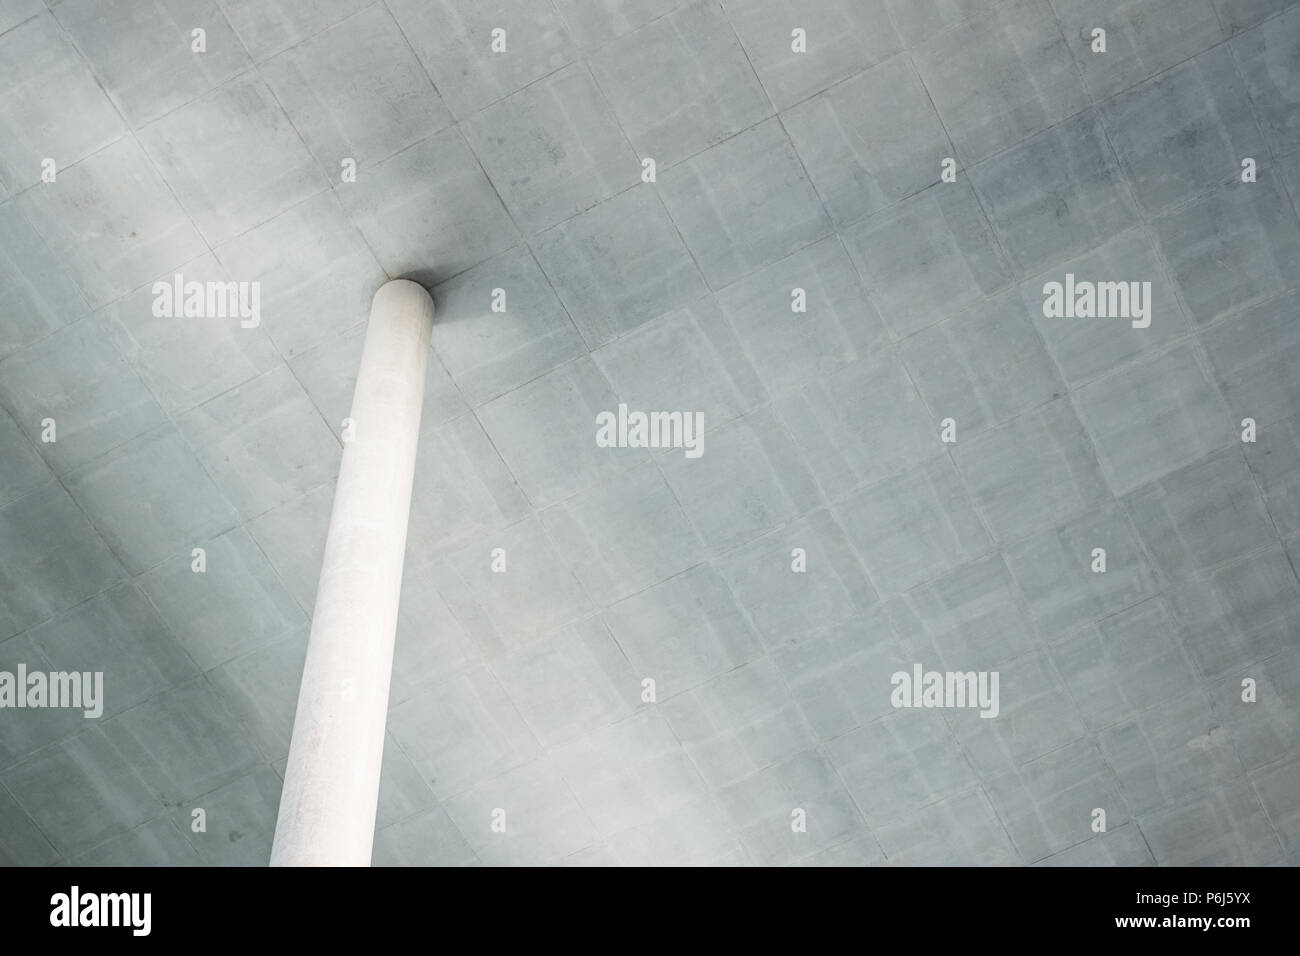 column under ceiling - concrete construction concept background Stock Photo